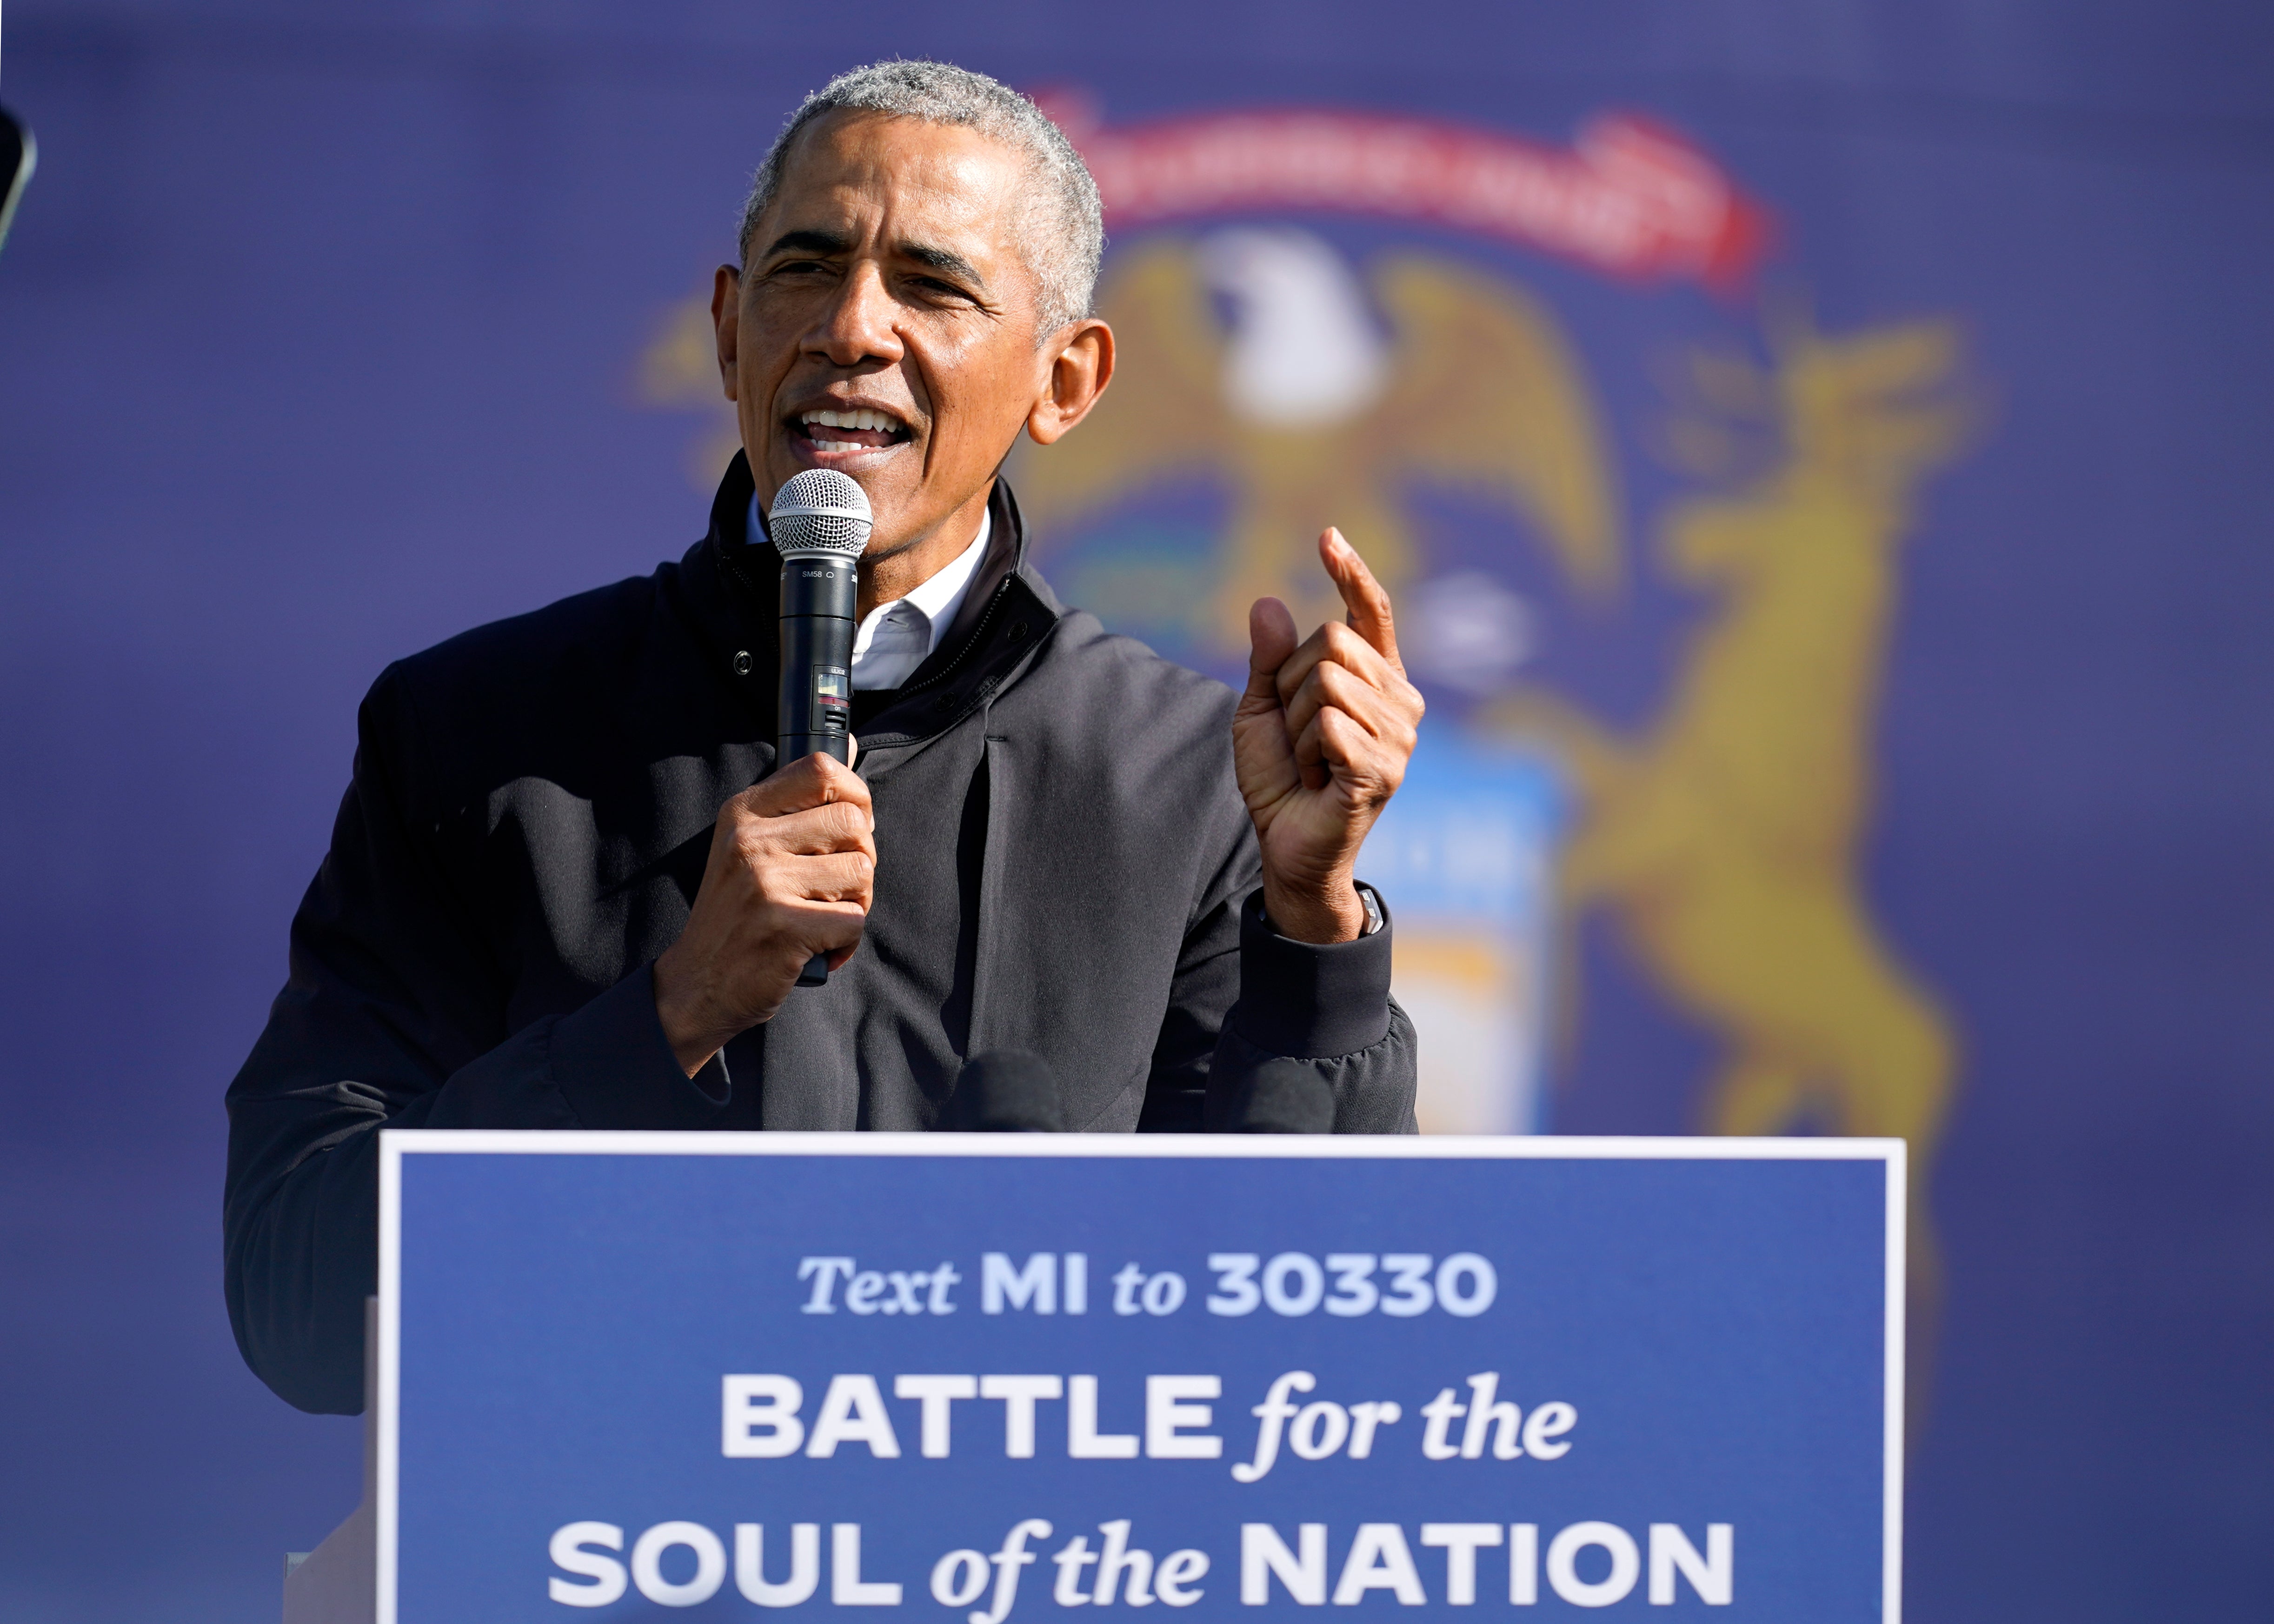 Obama apareció junto a Joe Biden en un evento de campaña en la ciudad de Flint